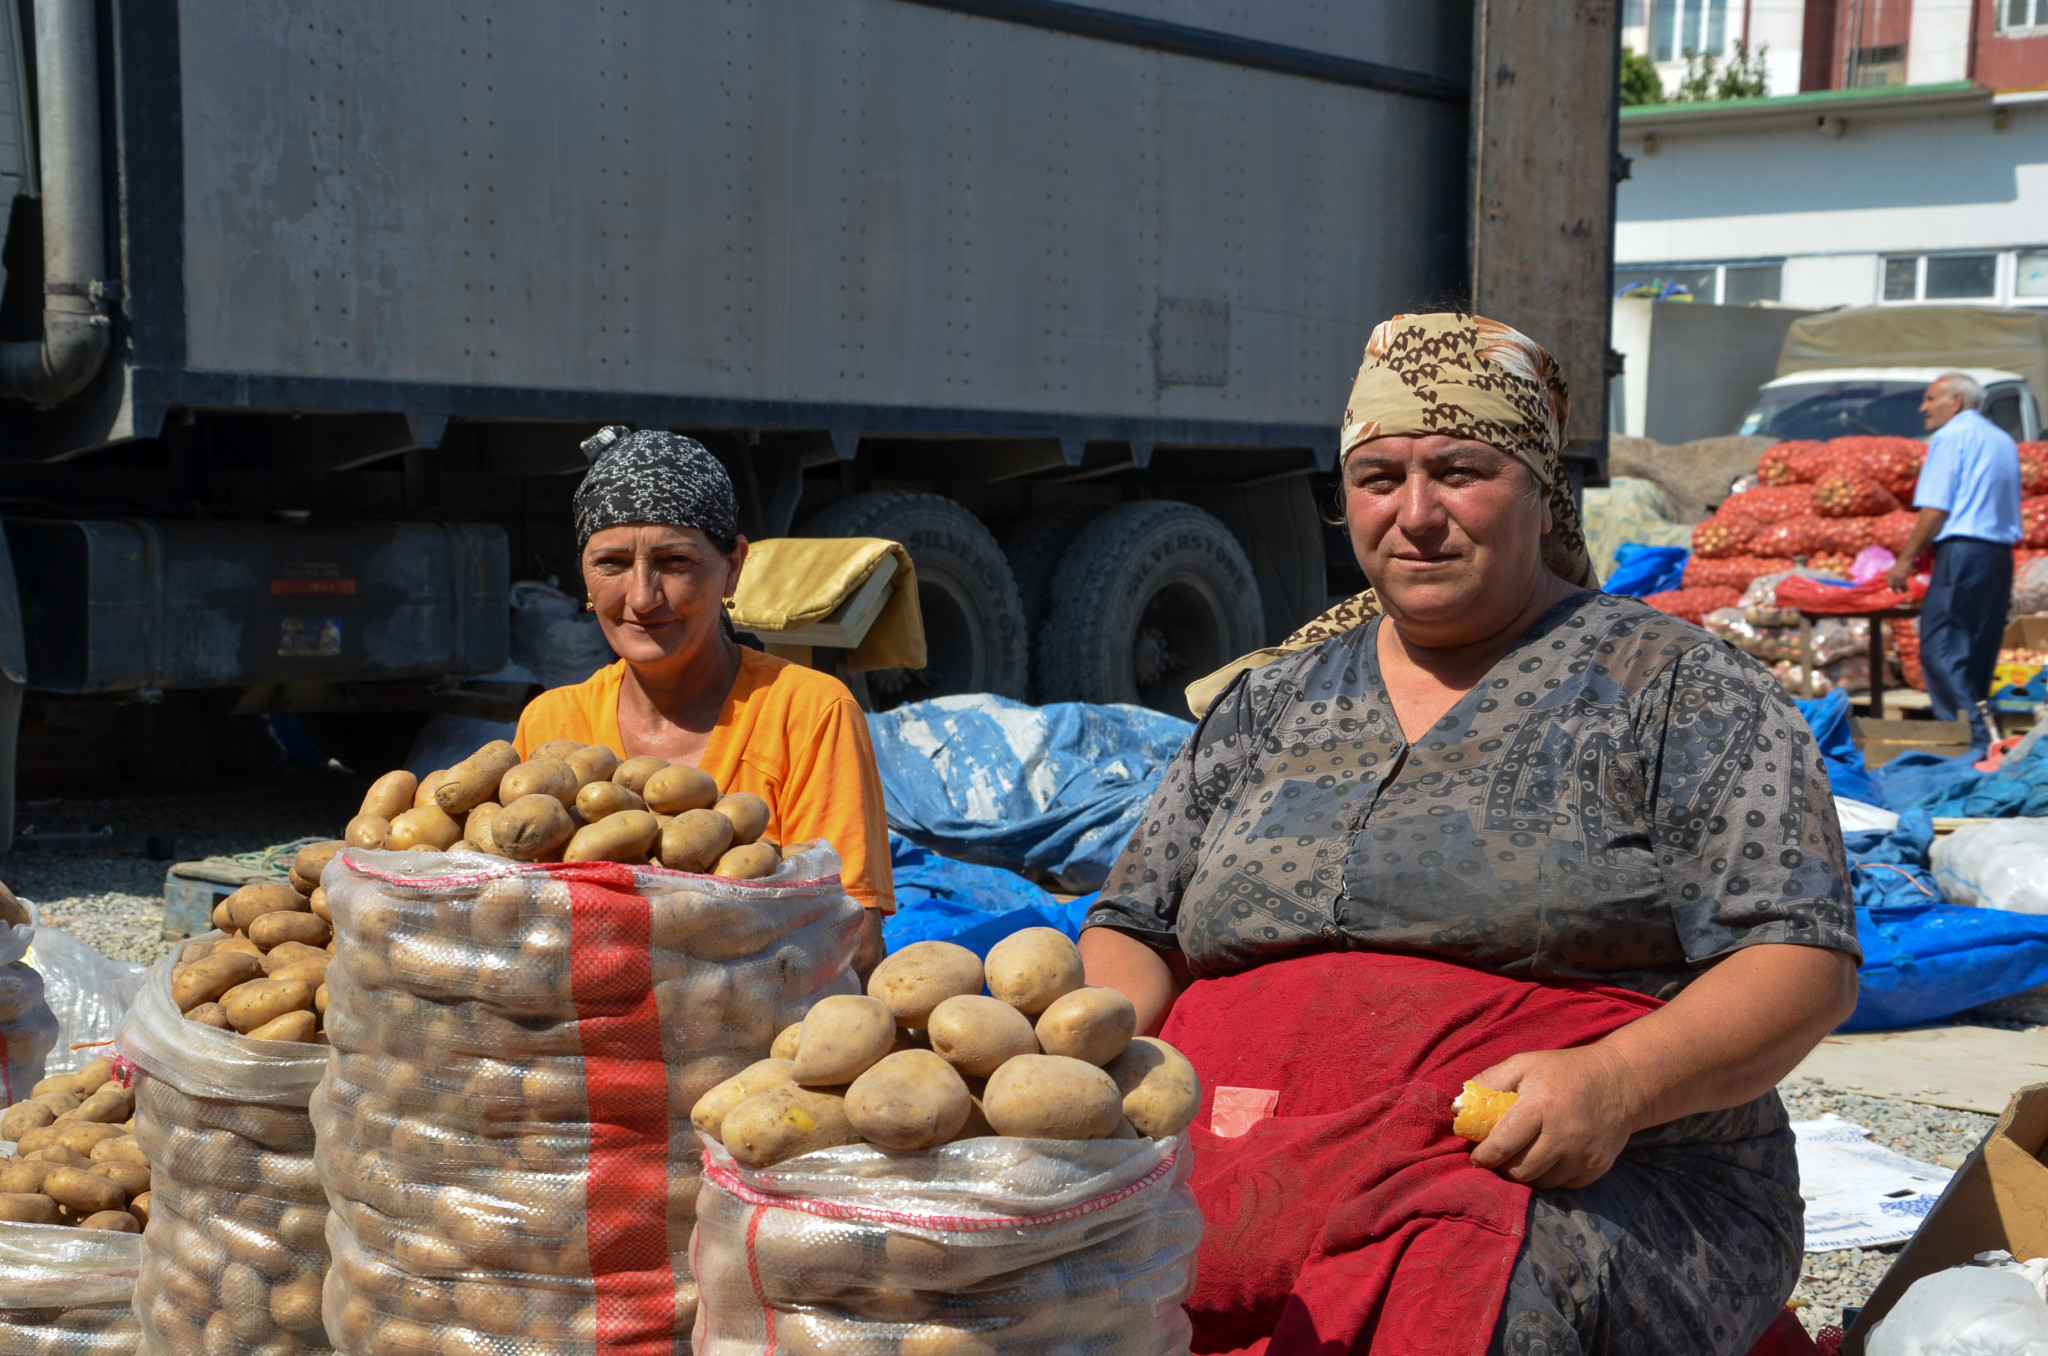 Kartoffeln gehören zum Aserbaidschan Essen dazu